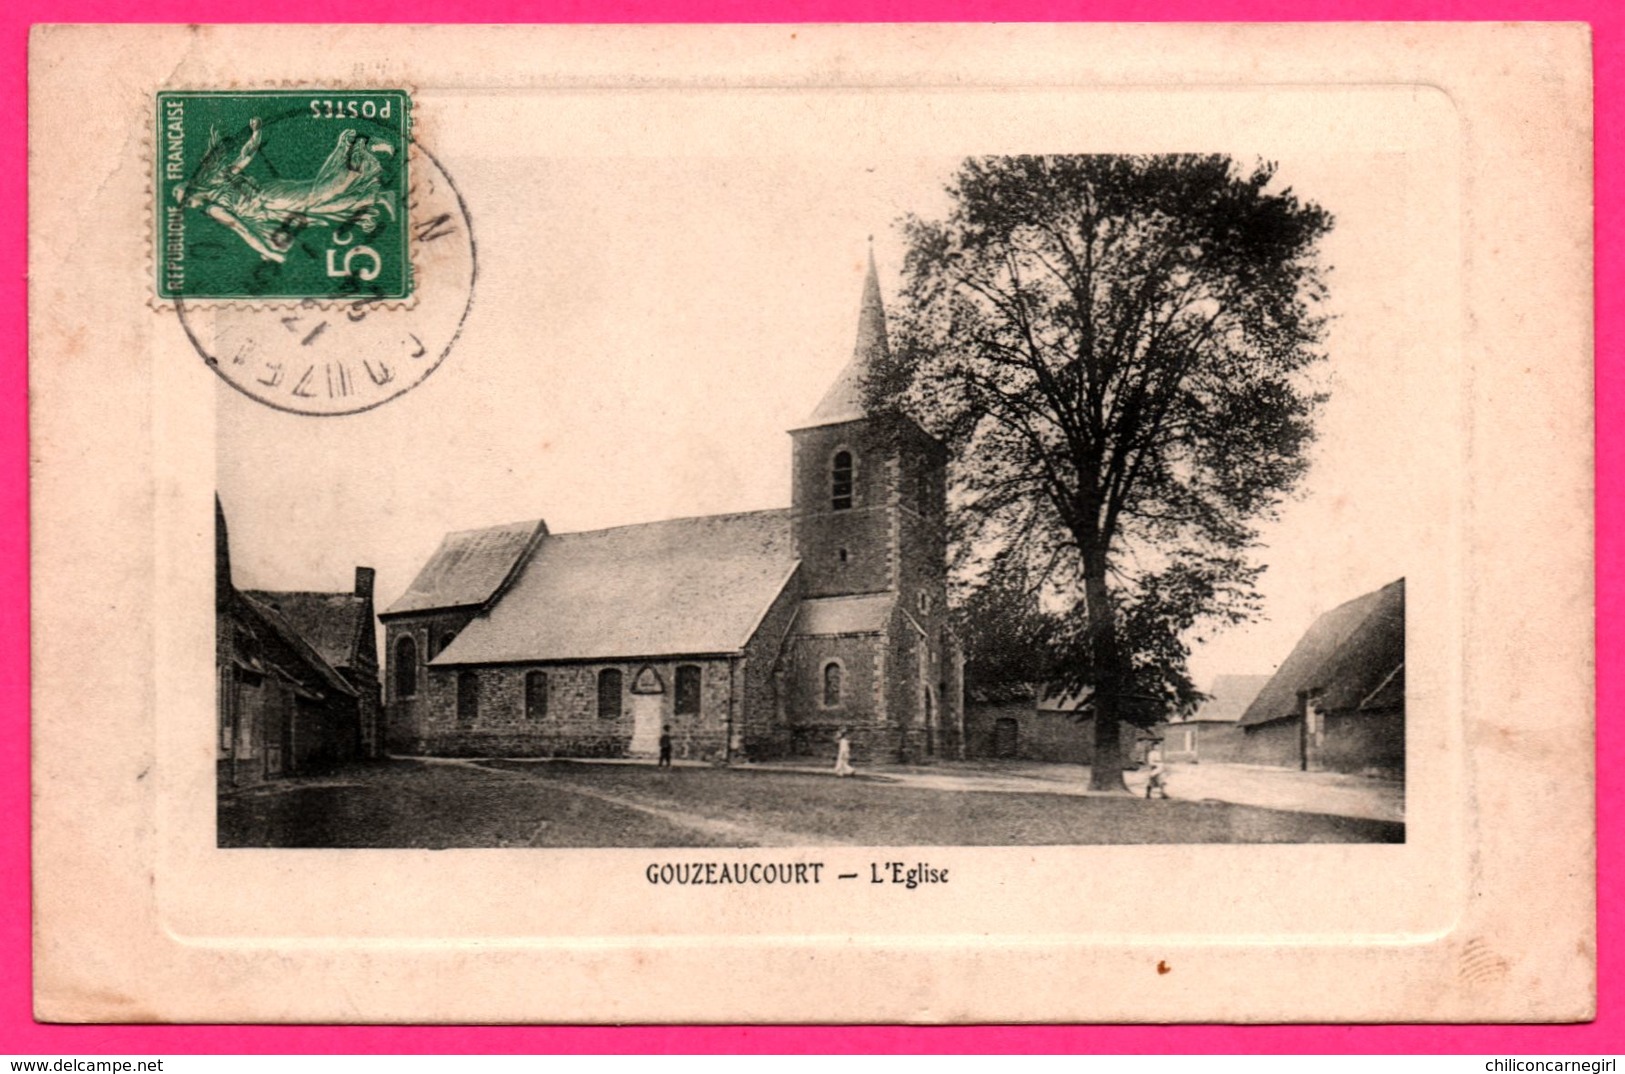 Gouzeaucourt - L'Eglise - Animée - Edit. RIBAUX - 1911 - Embossed - Marcoing